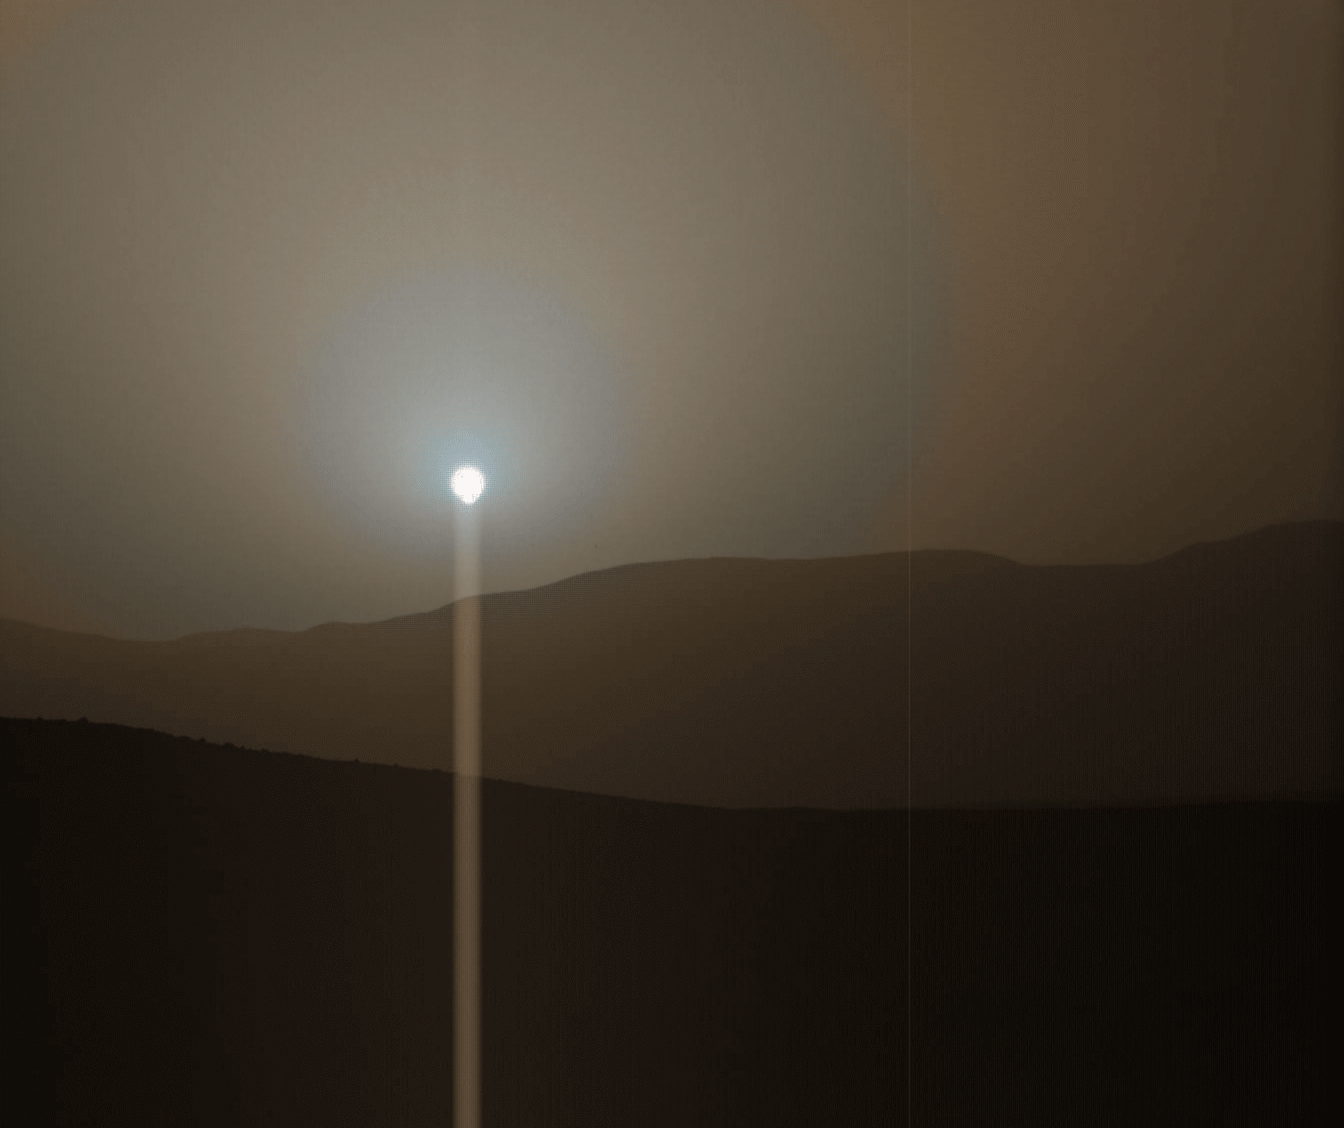 Curiosity Sol 956 sunset